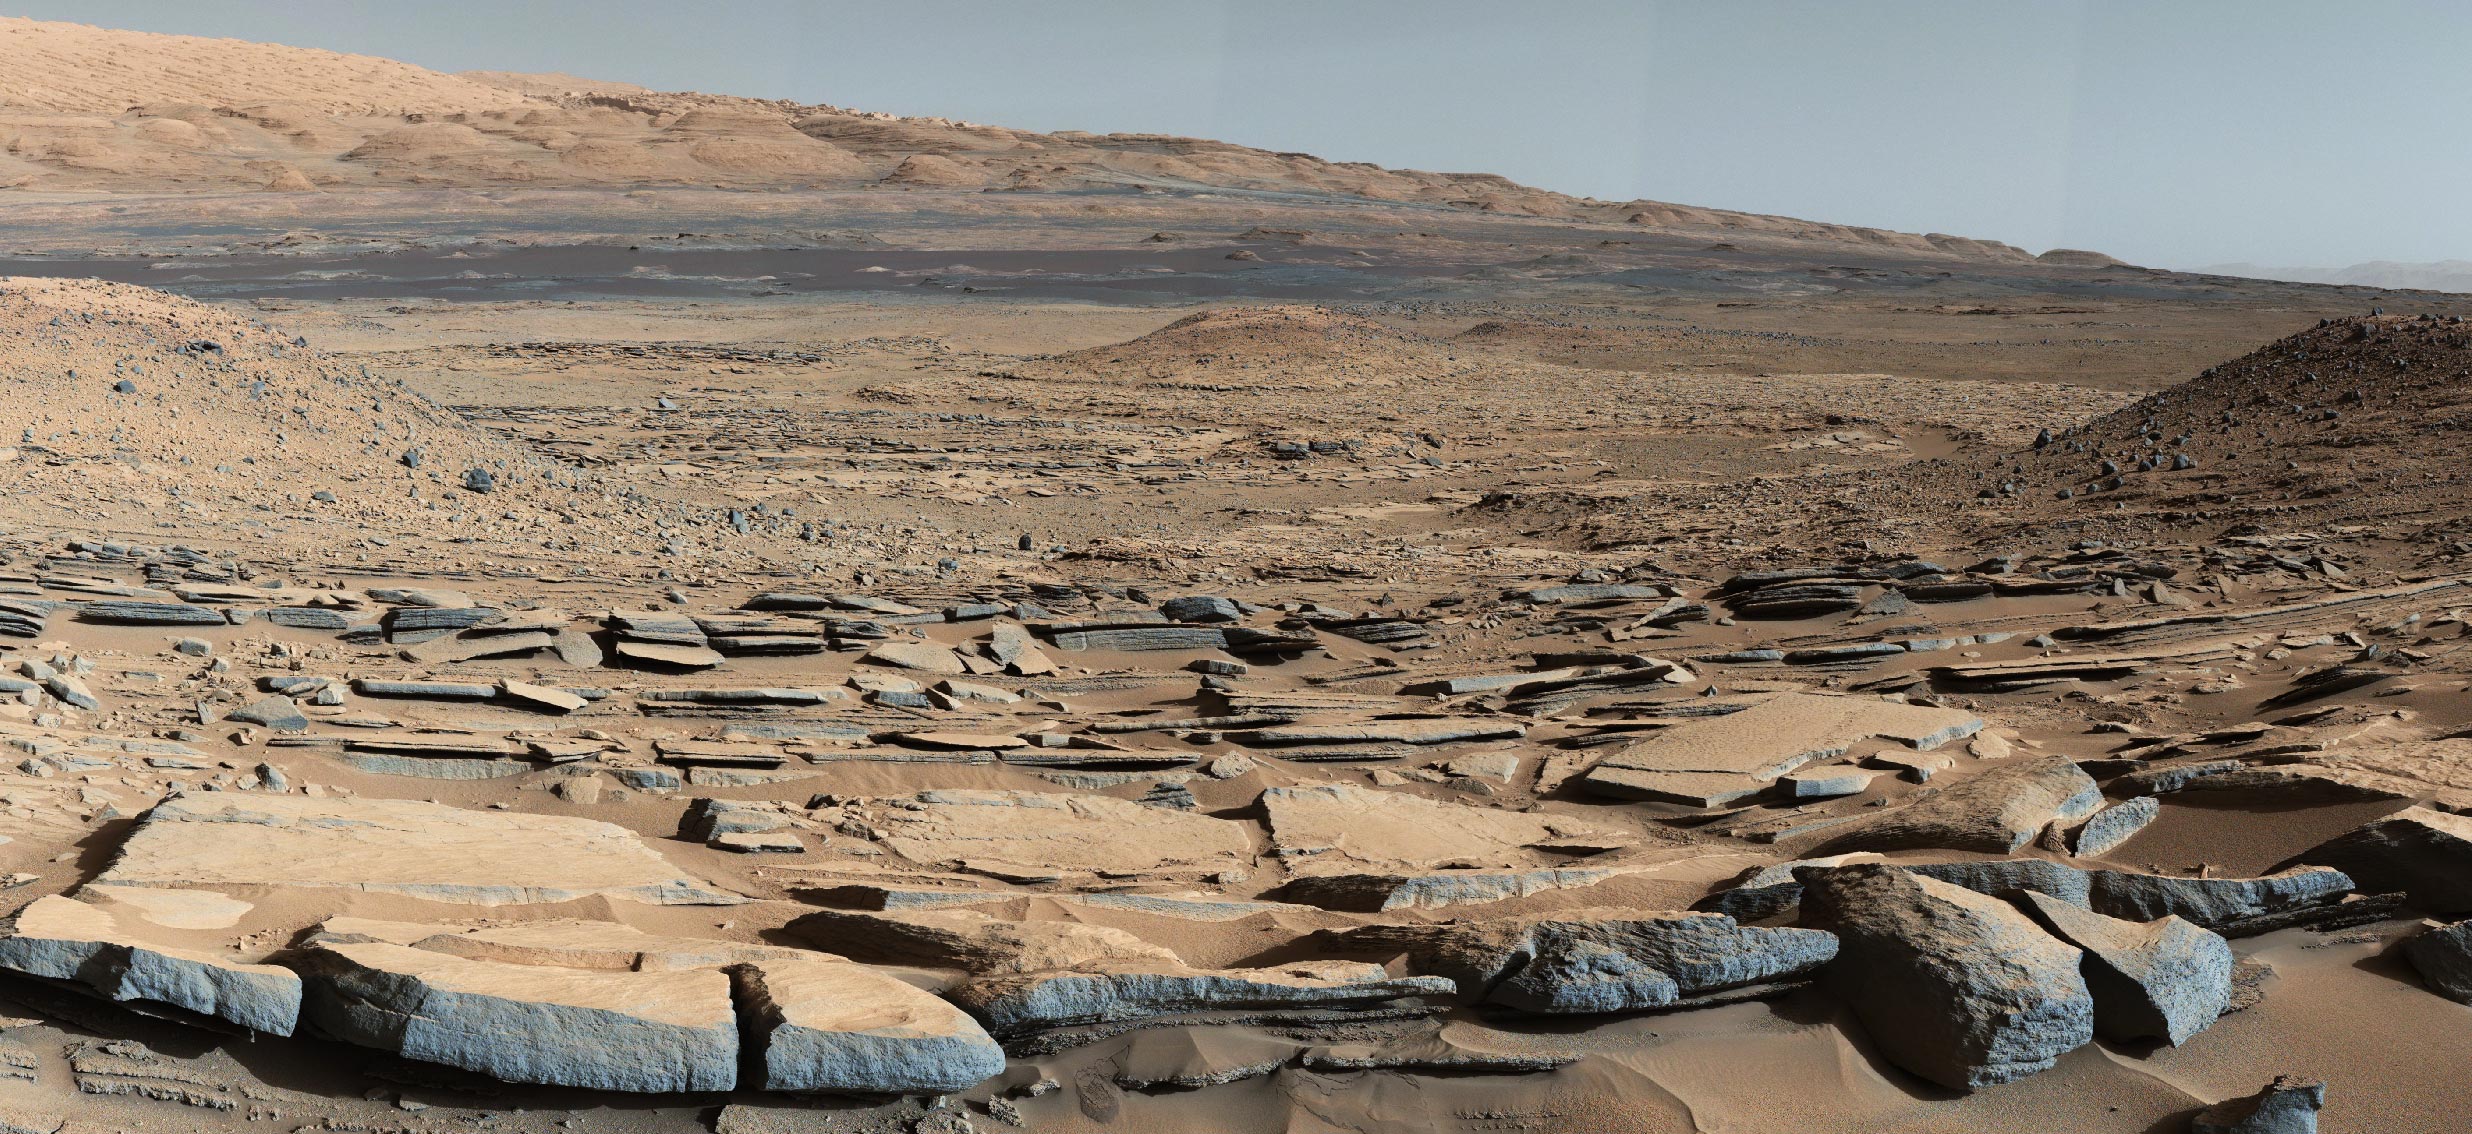 火星并不是短时间内干涸的，其气候曾在干燥期和潮湿期之间往复